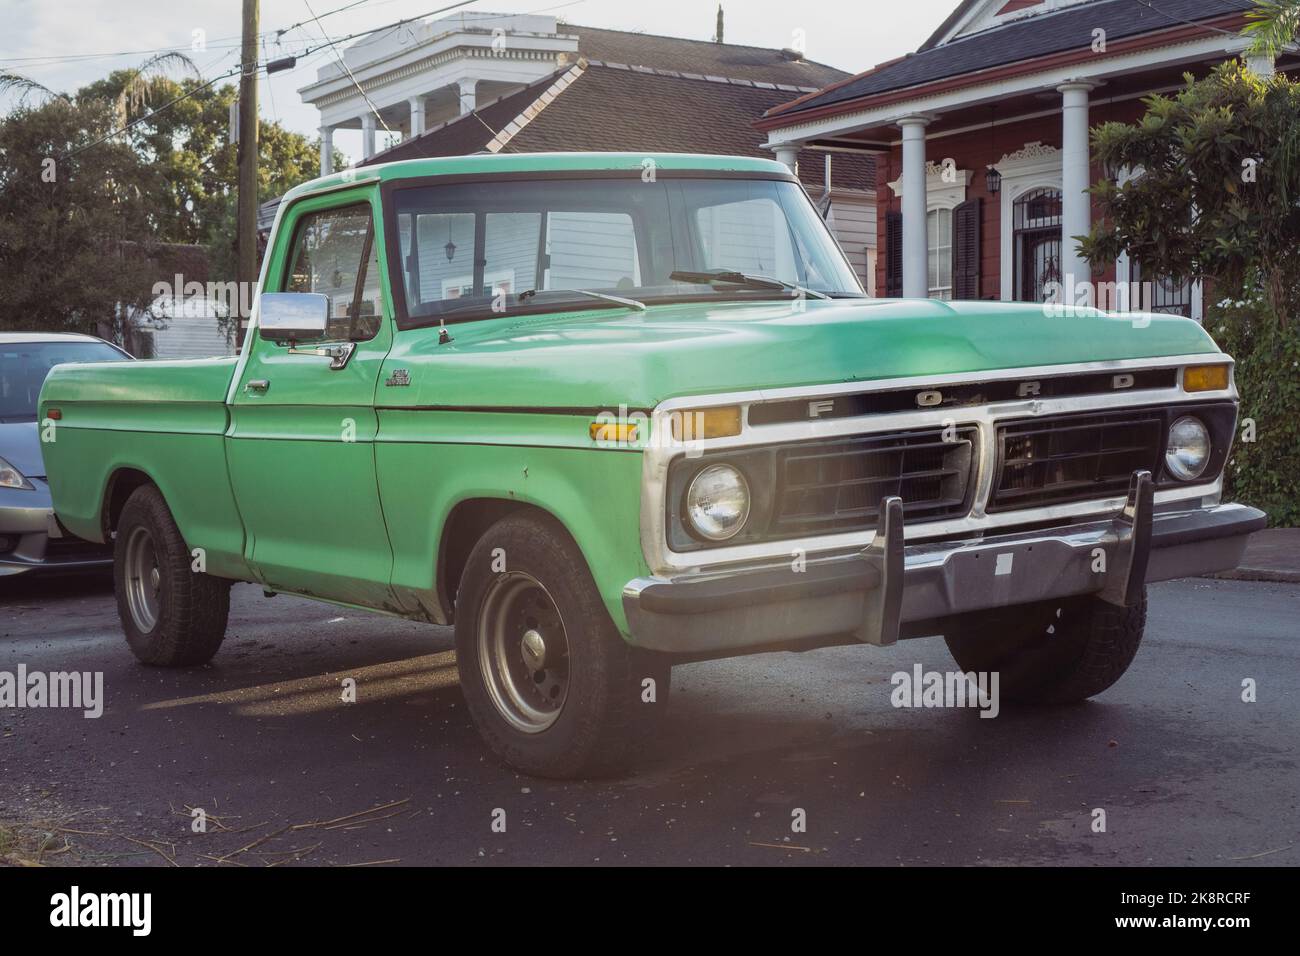 Photo de paysage d'un camion ford vert d'époque tourné à la Nouvelle-Orléans, Louisiane Banque D'Images